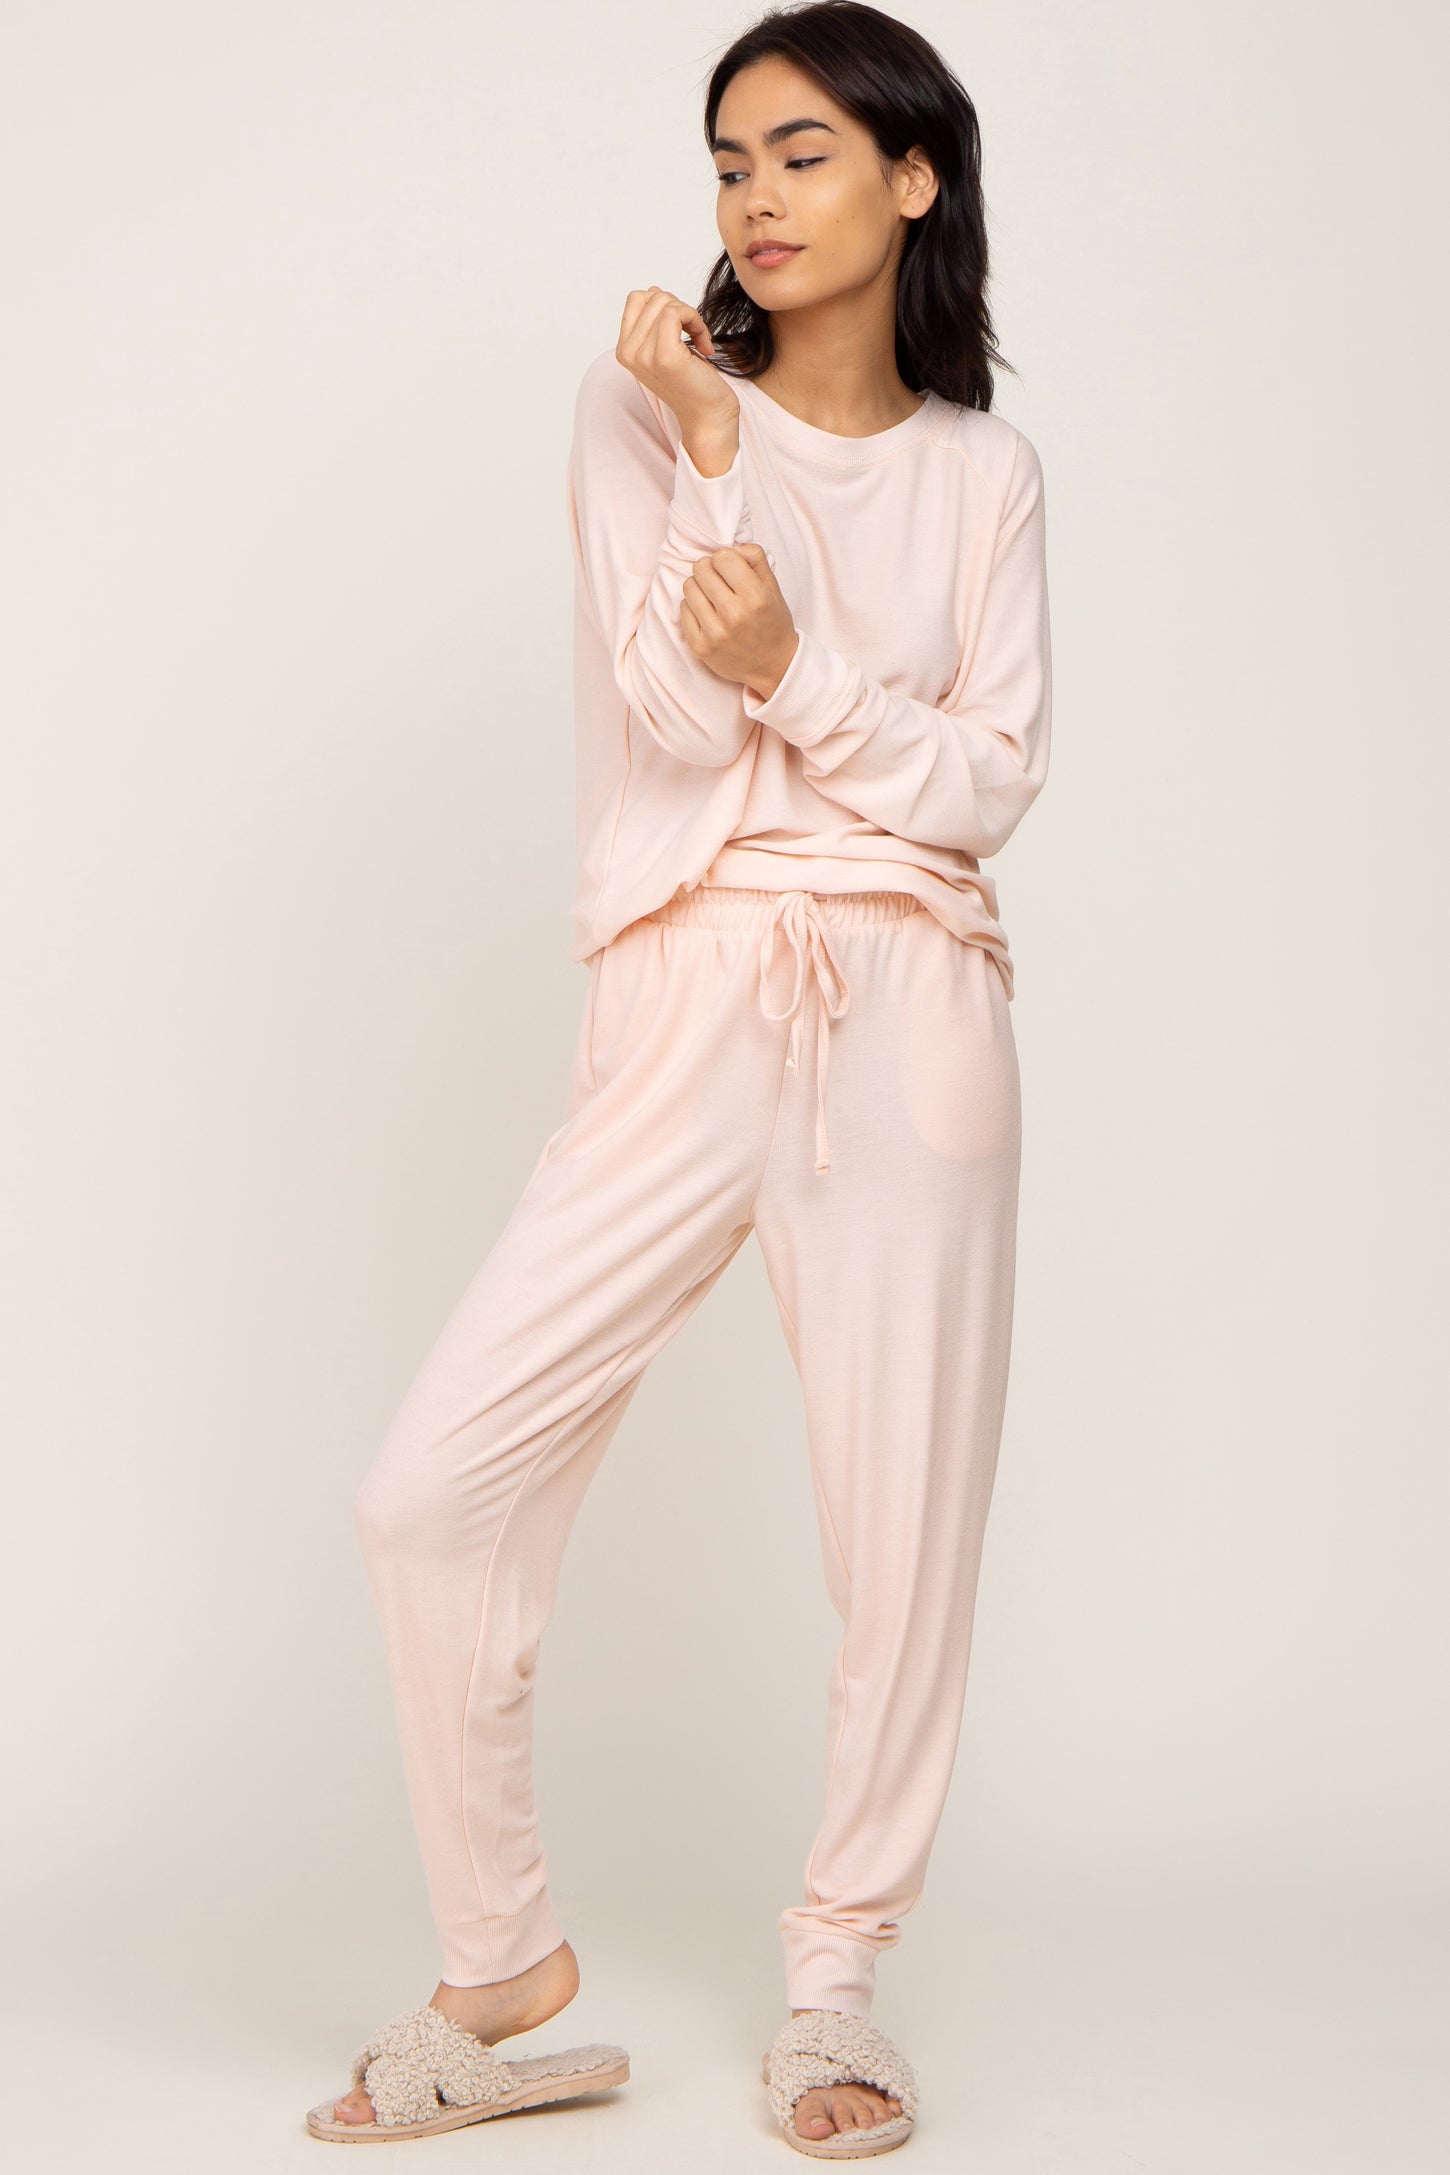 Light Pink Soft Knit Long Sleeve Set– PinkBlush